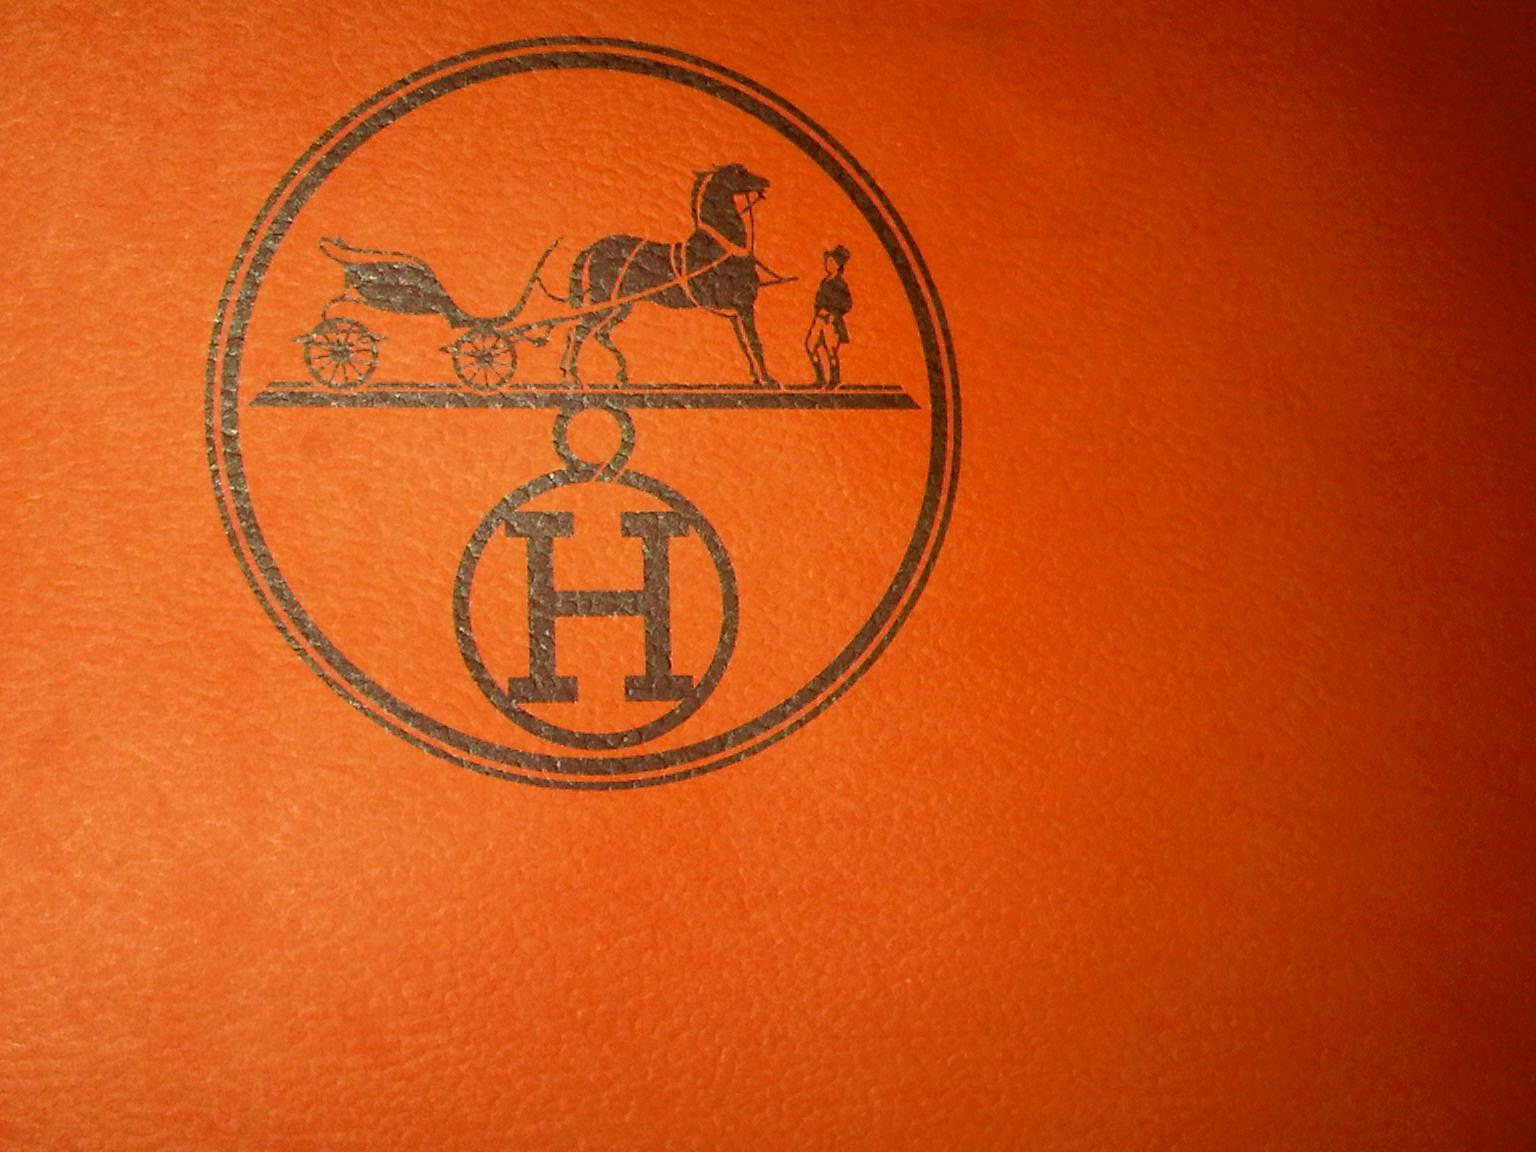 Hermes H Logo - Hermes Logos